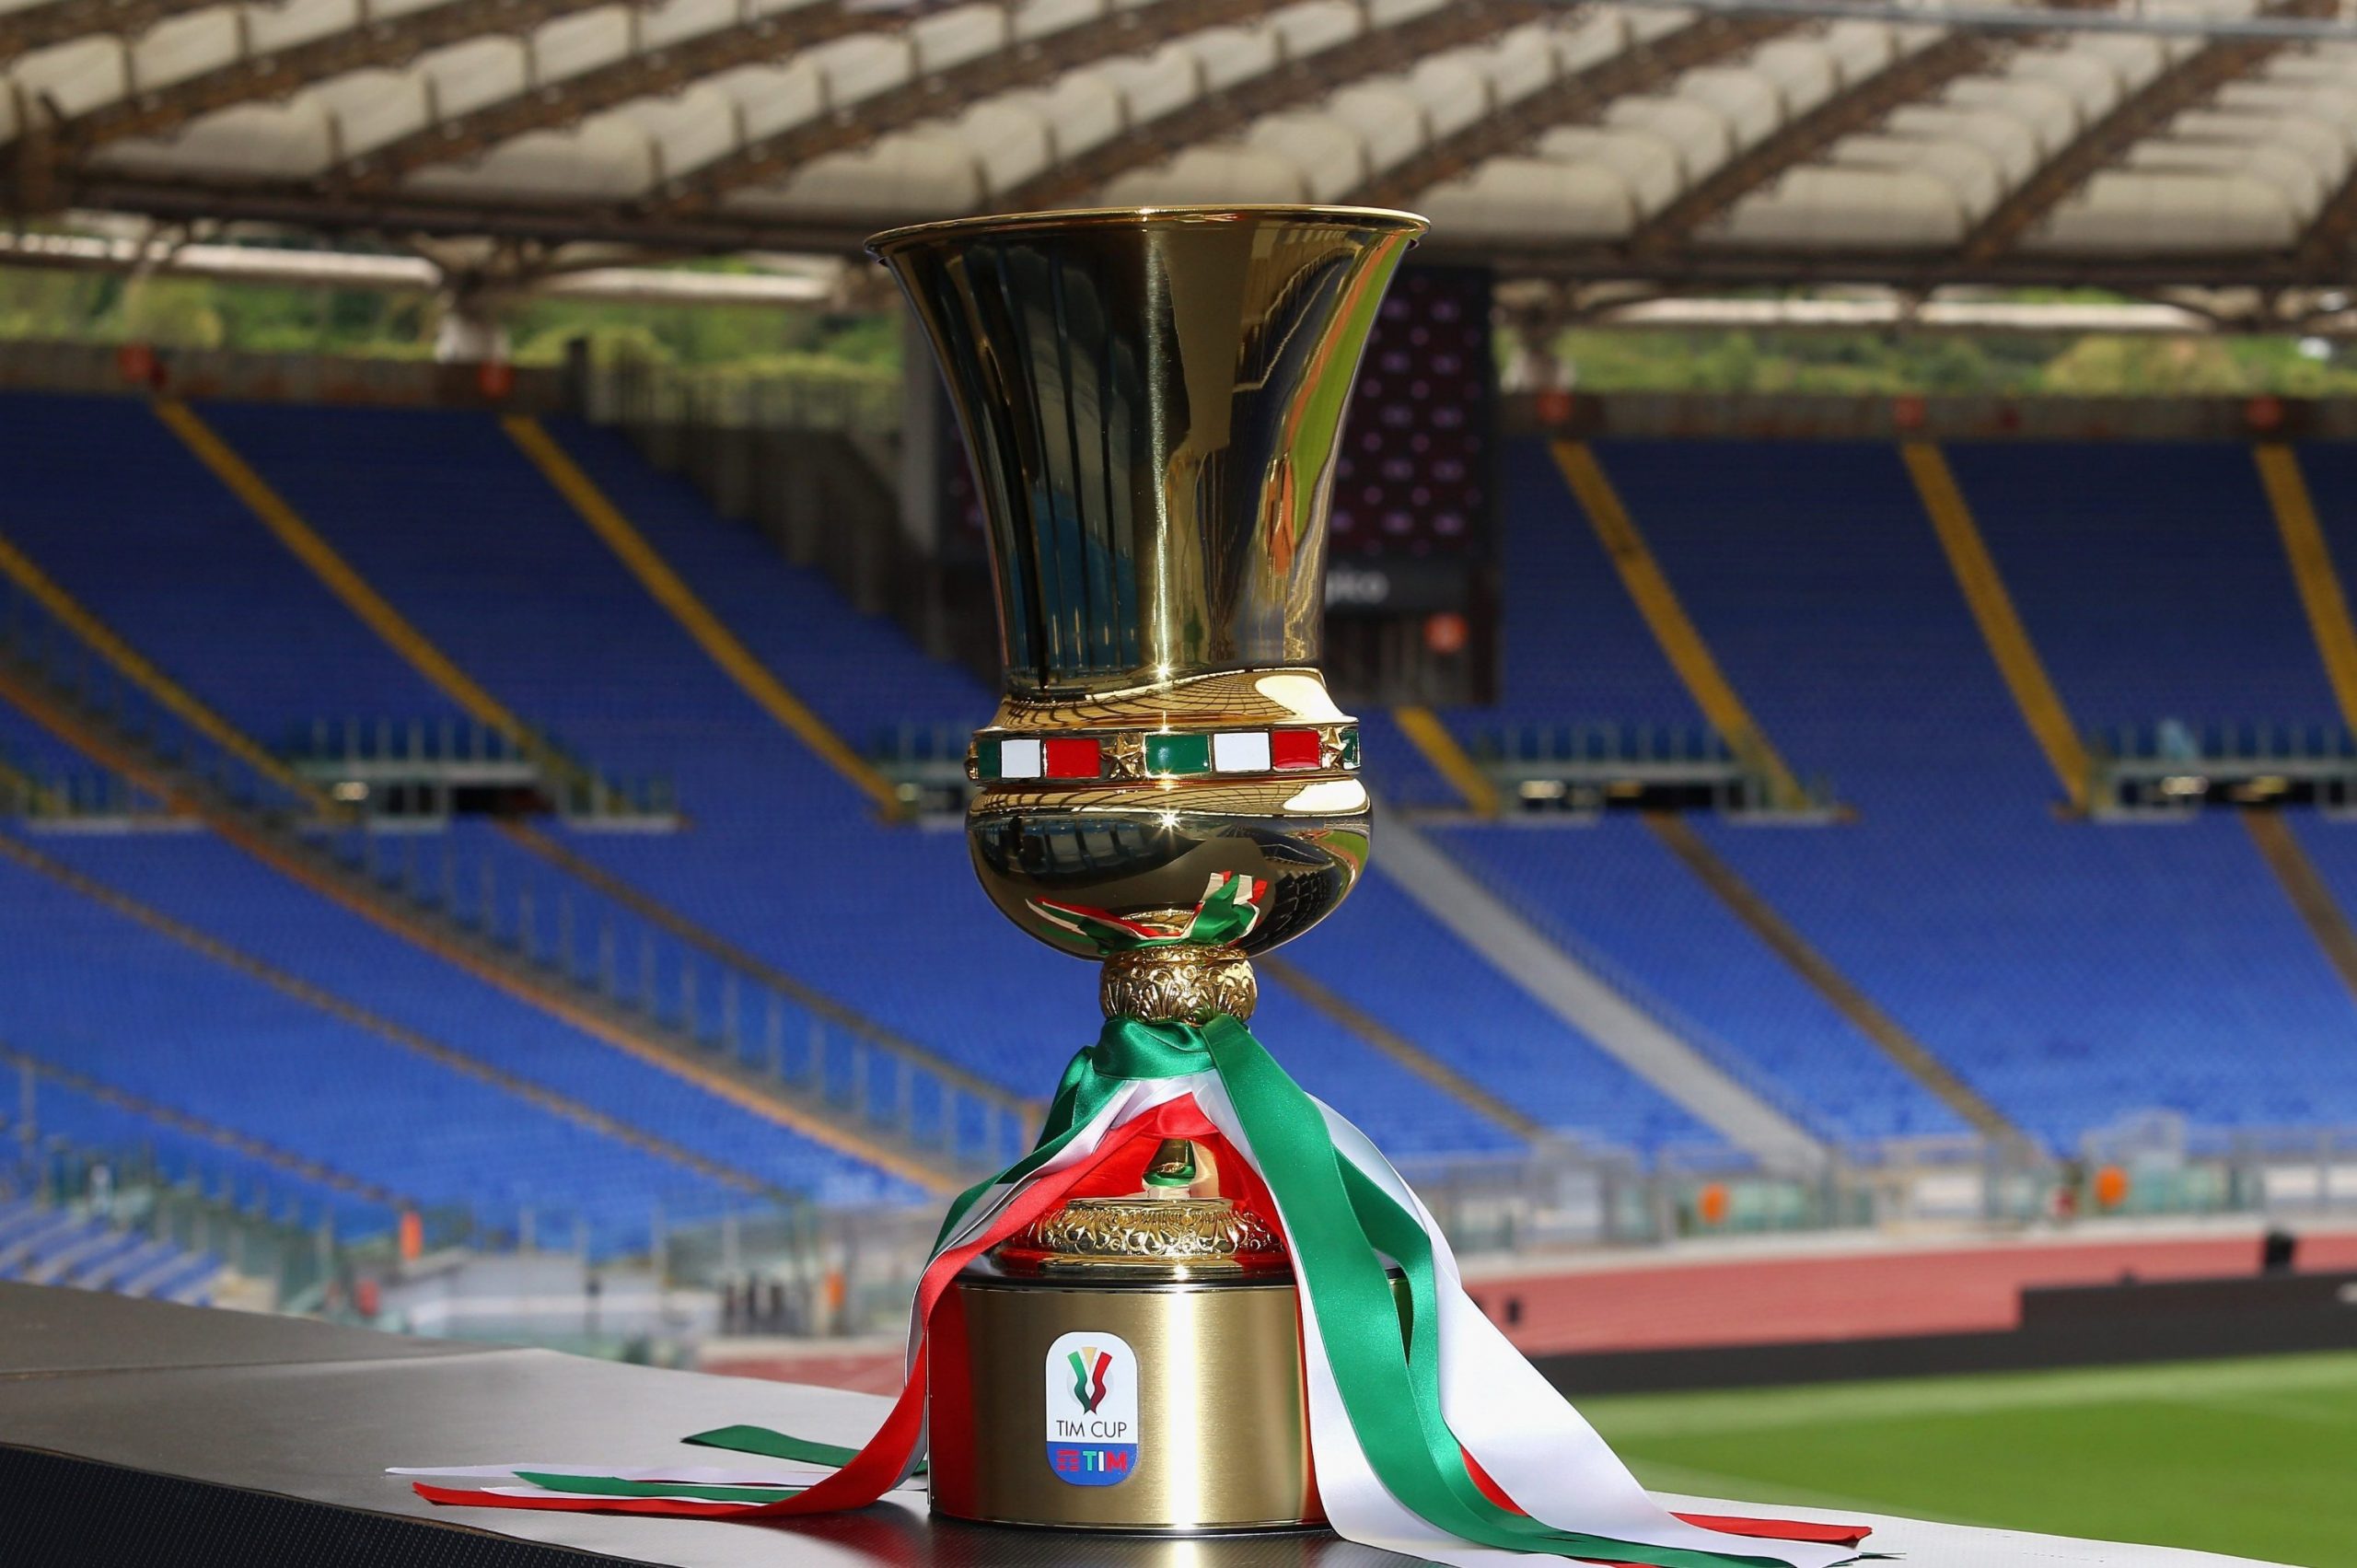 Domani il sorteggio del tabellone della Coppa Italia 2020/2021